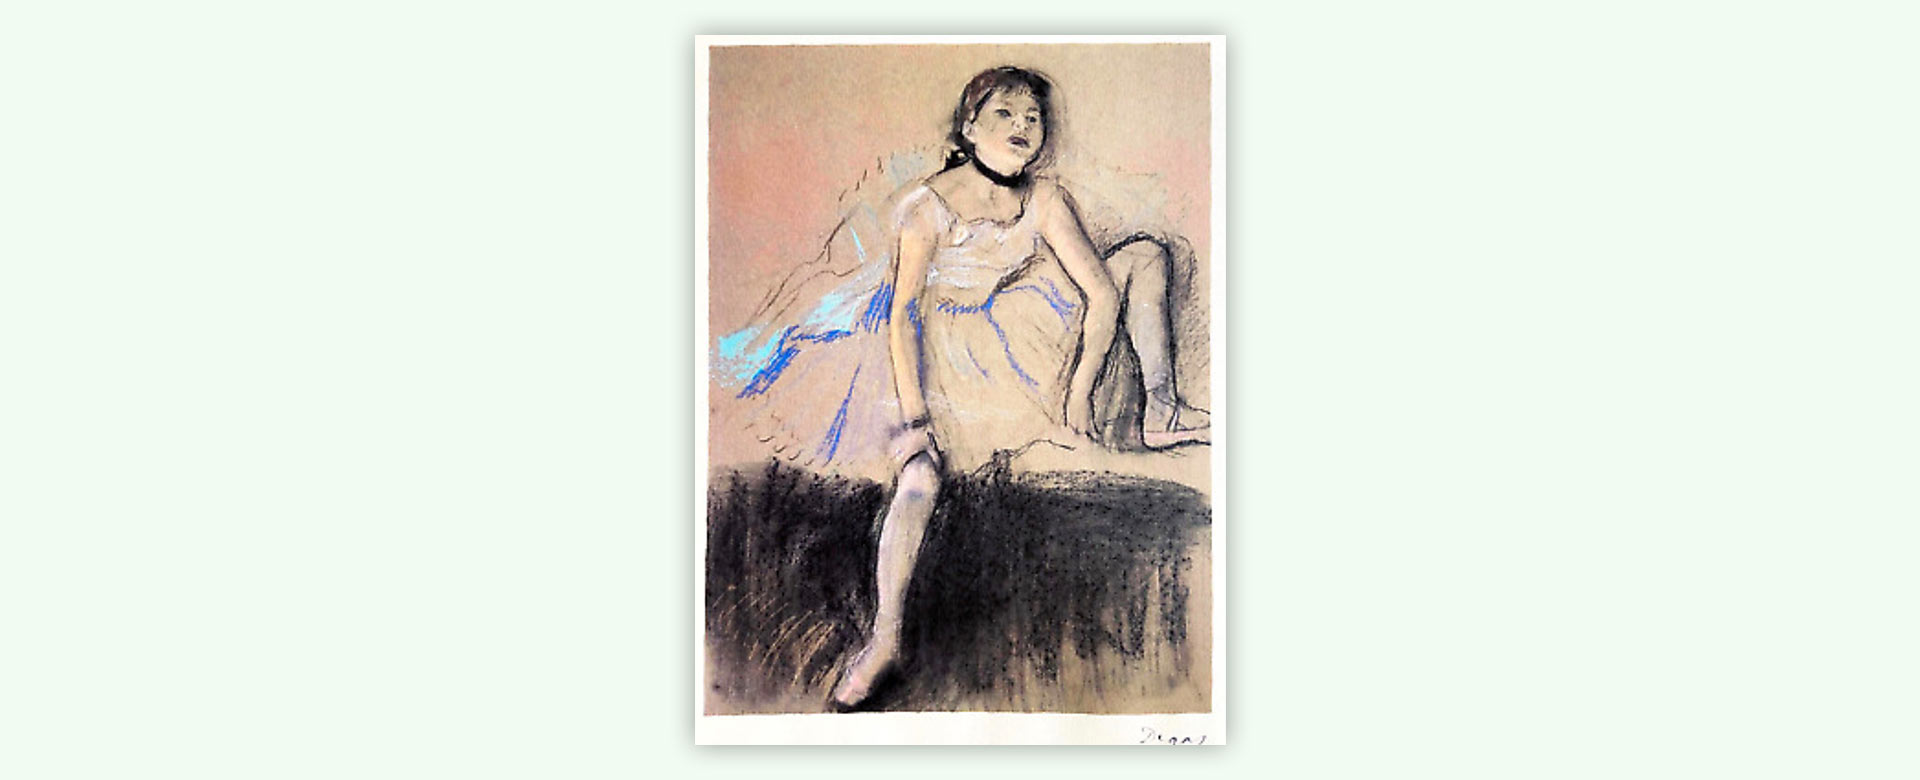 Edgar Degas, Ballerina in riposo, litografia. Courtesy Collezione Sanfo